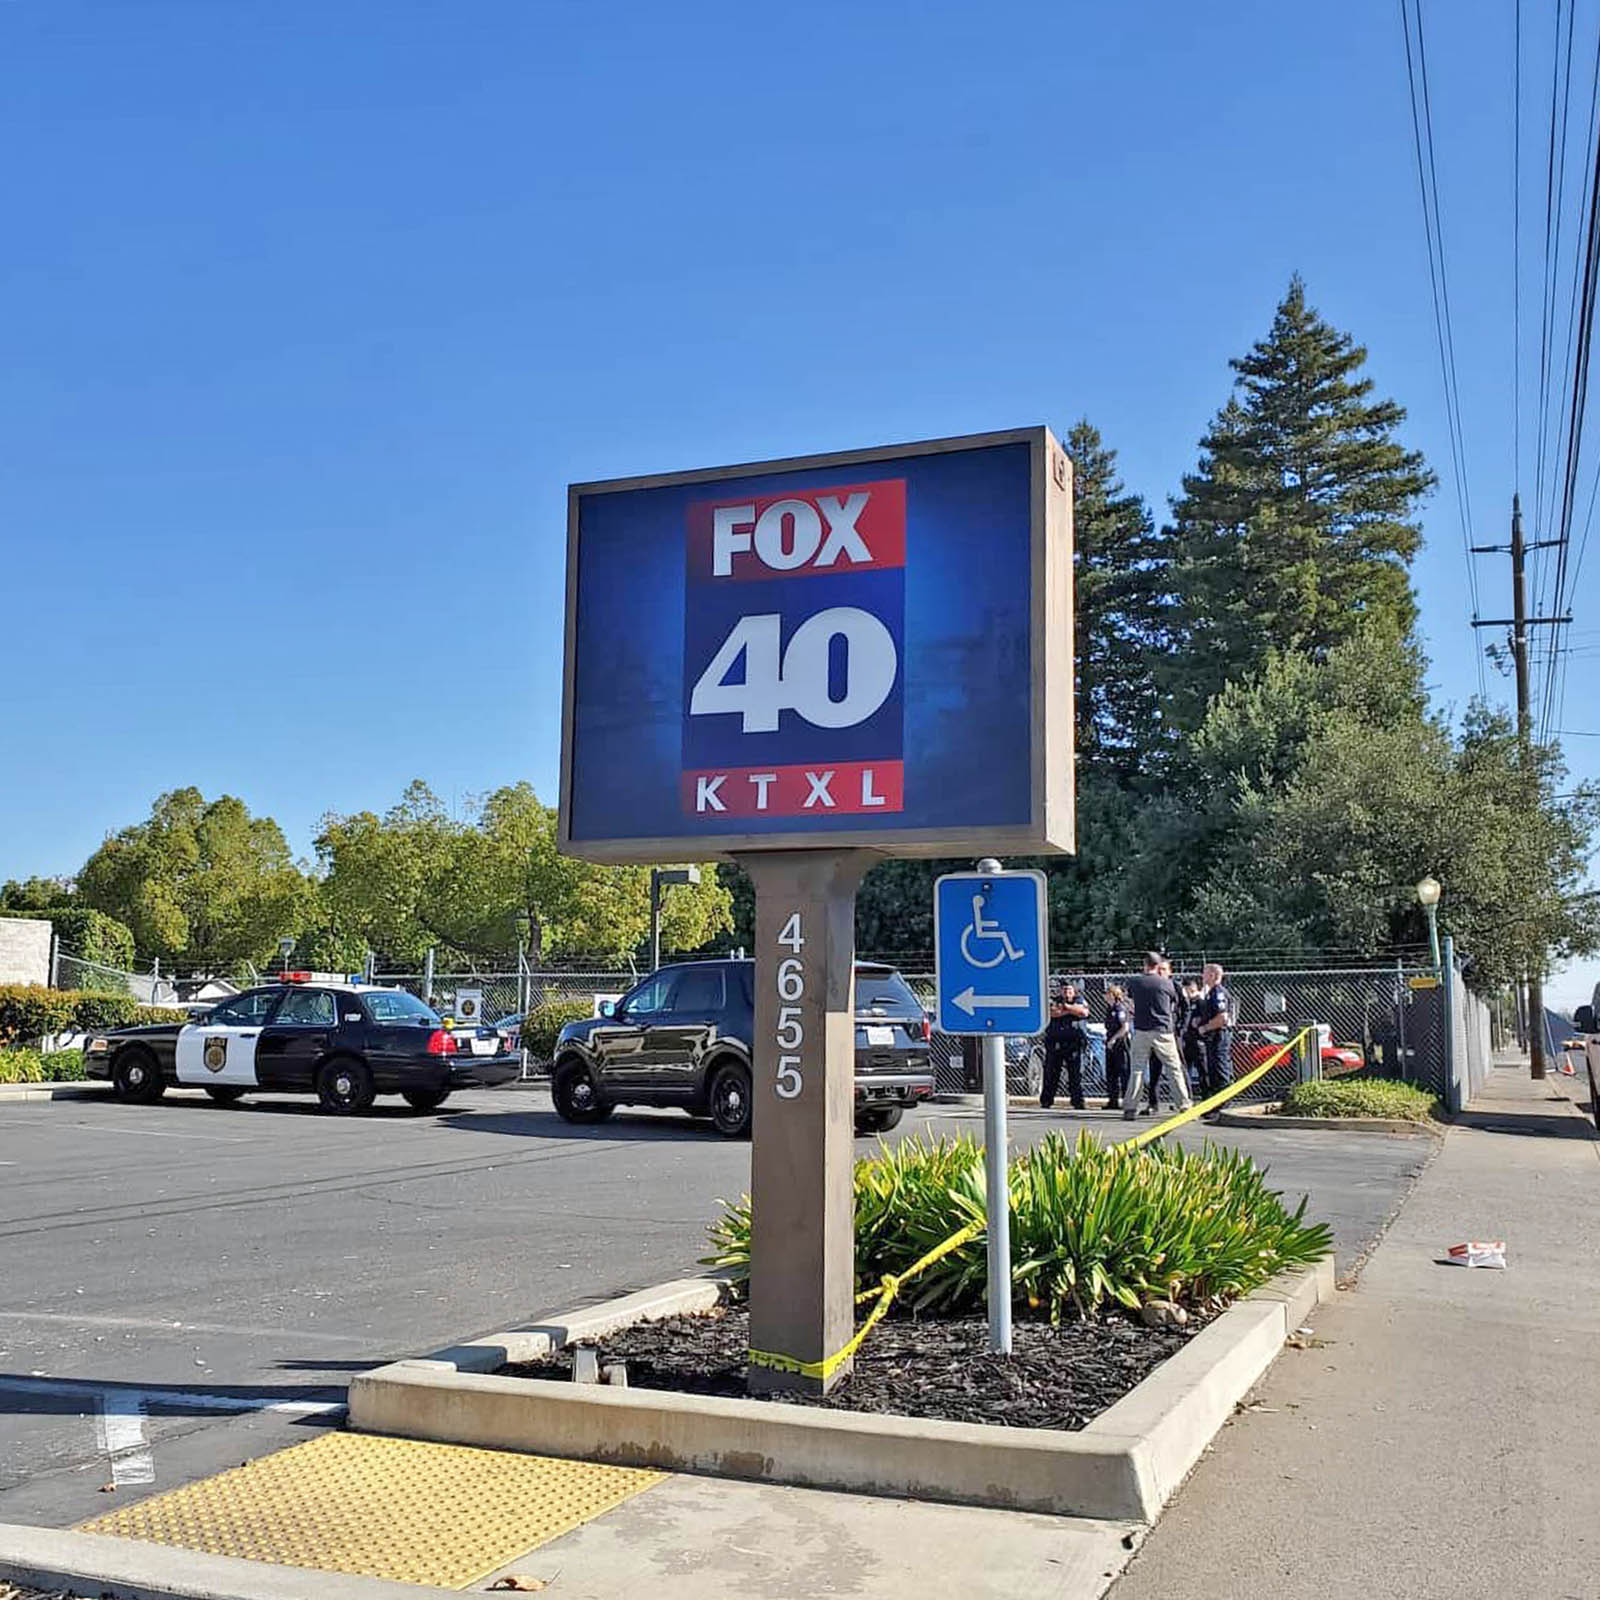 Fox 40 News Sacramento Studio ocation 